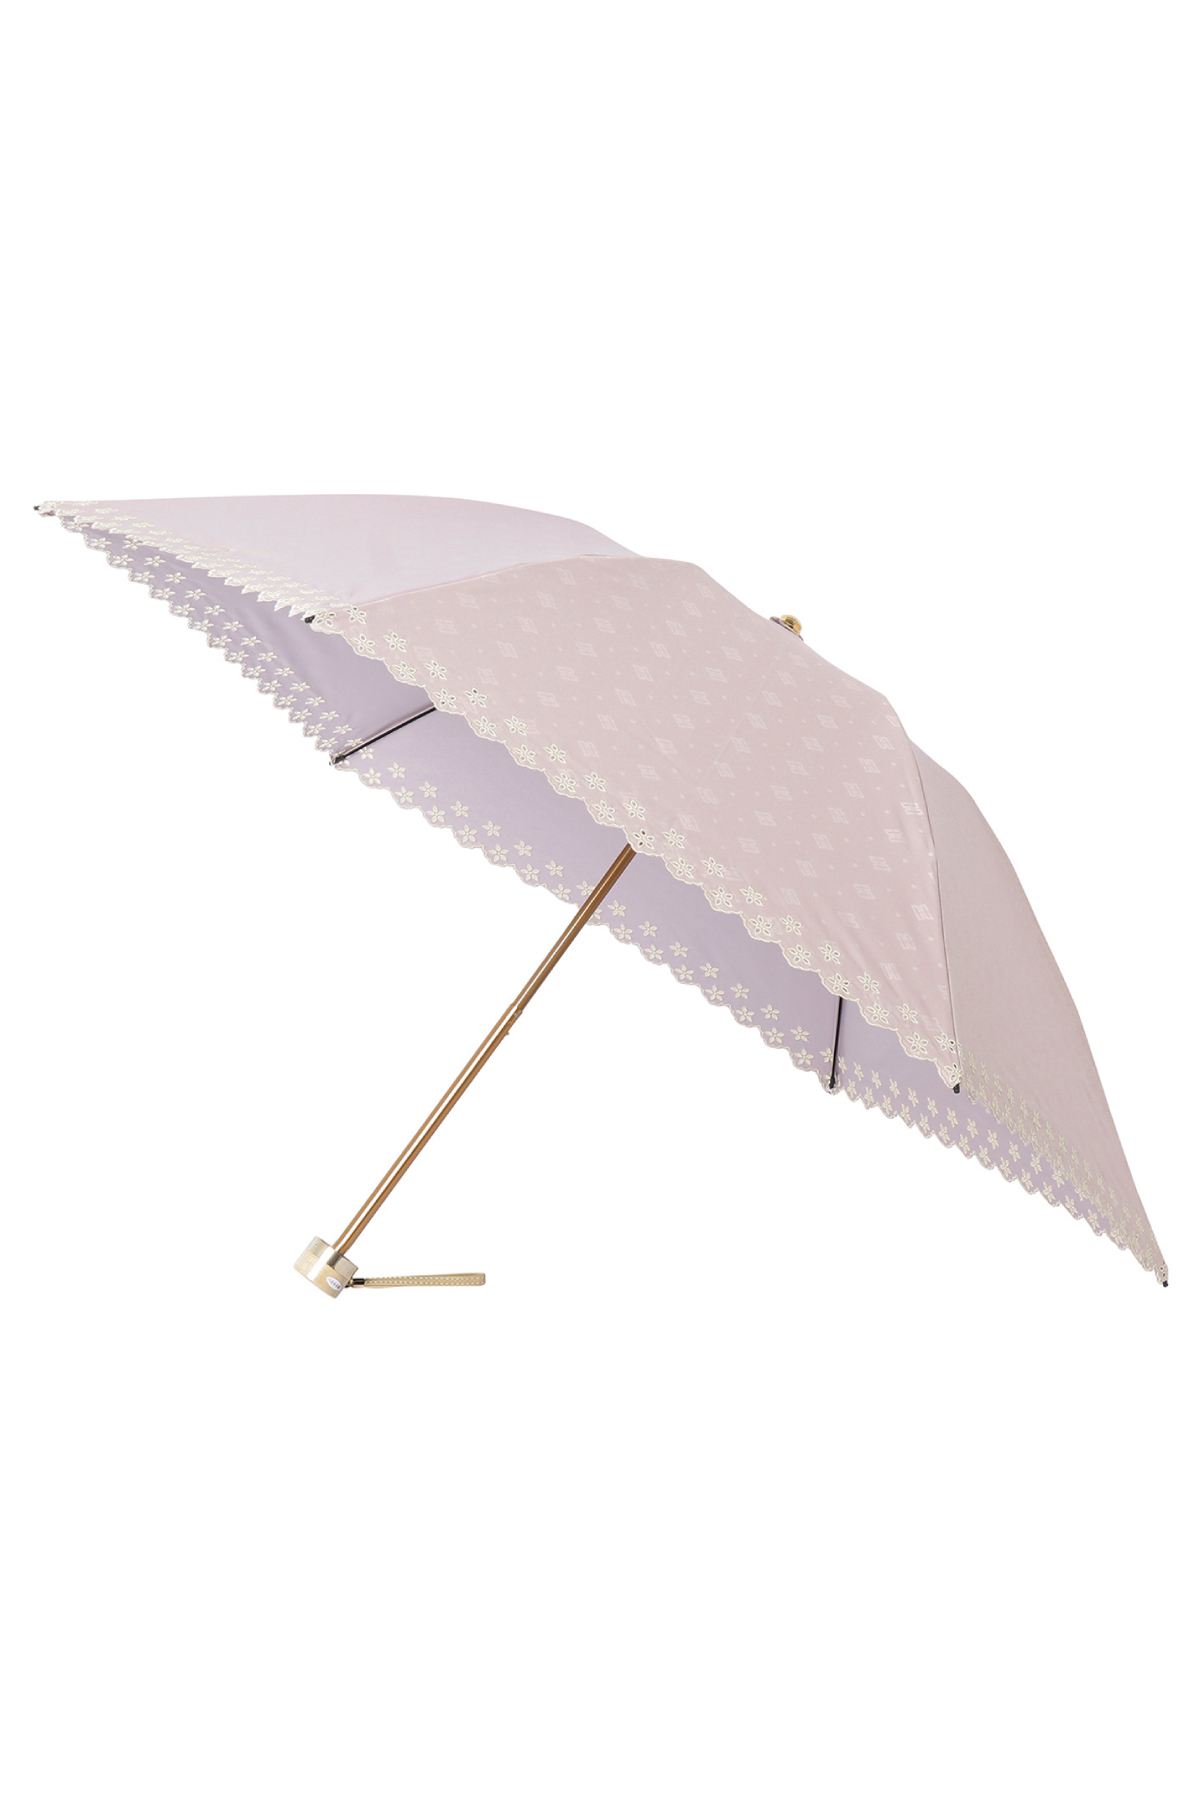 【日傘】ミニ折りたたみ傘ドットジャカード刺繍 詳細画像 30/ピンク 2